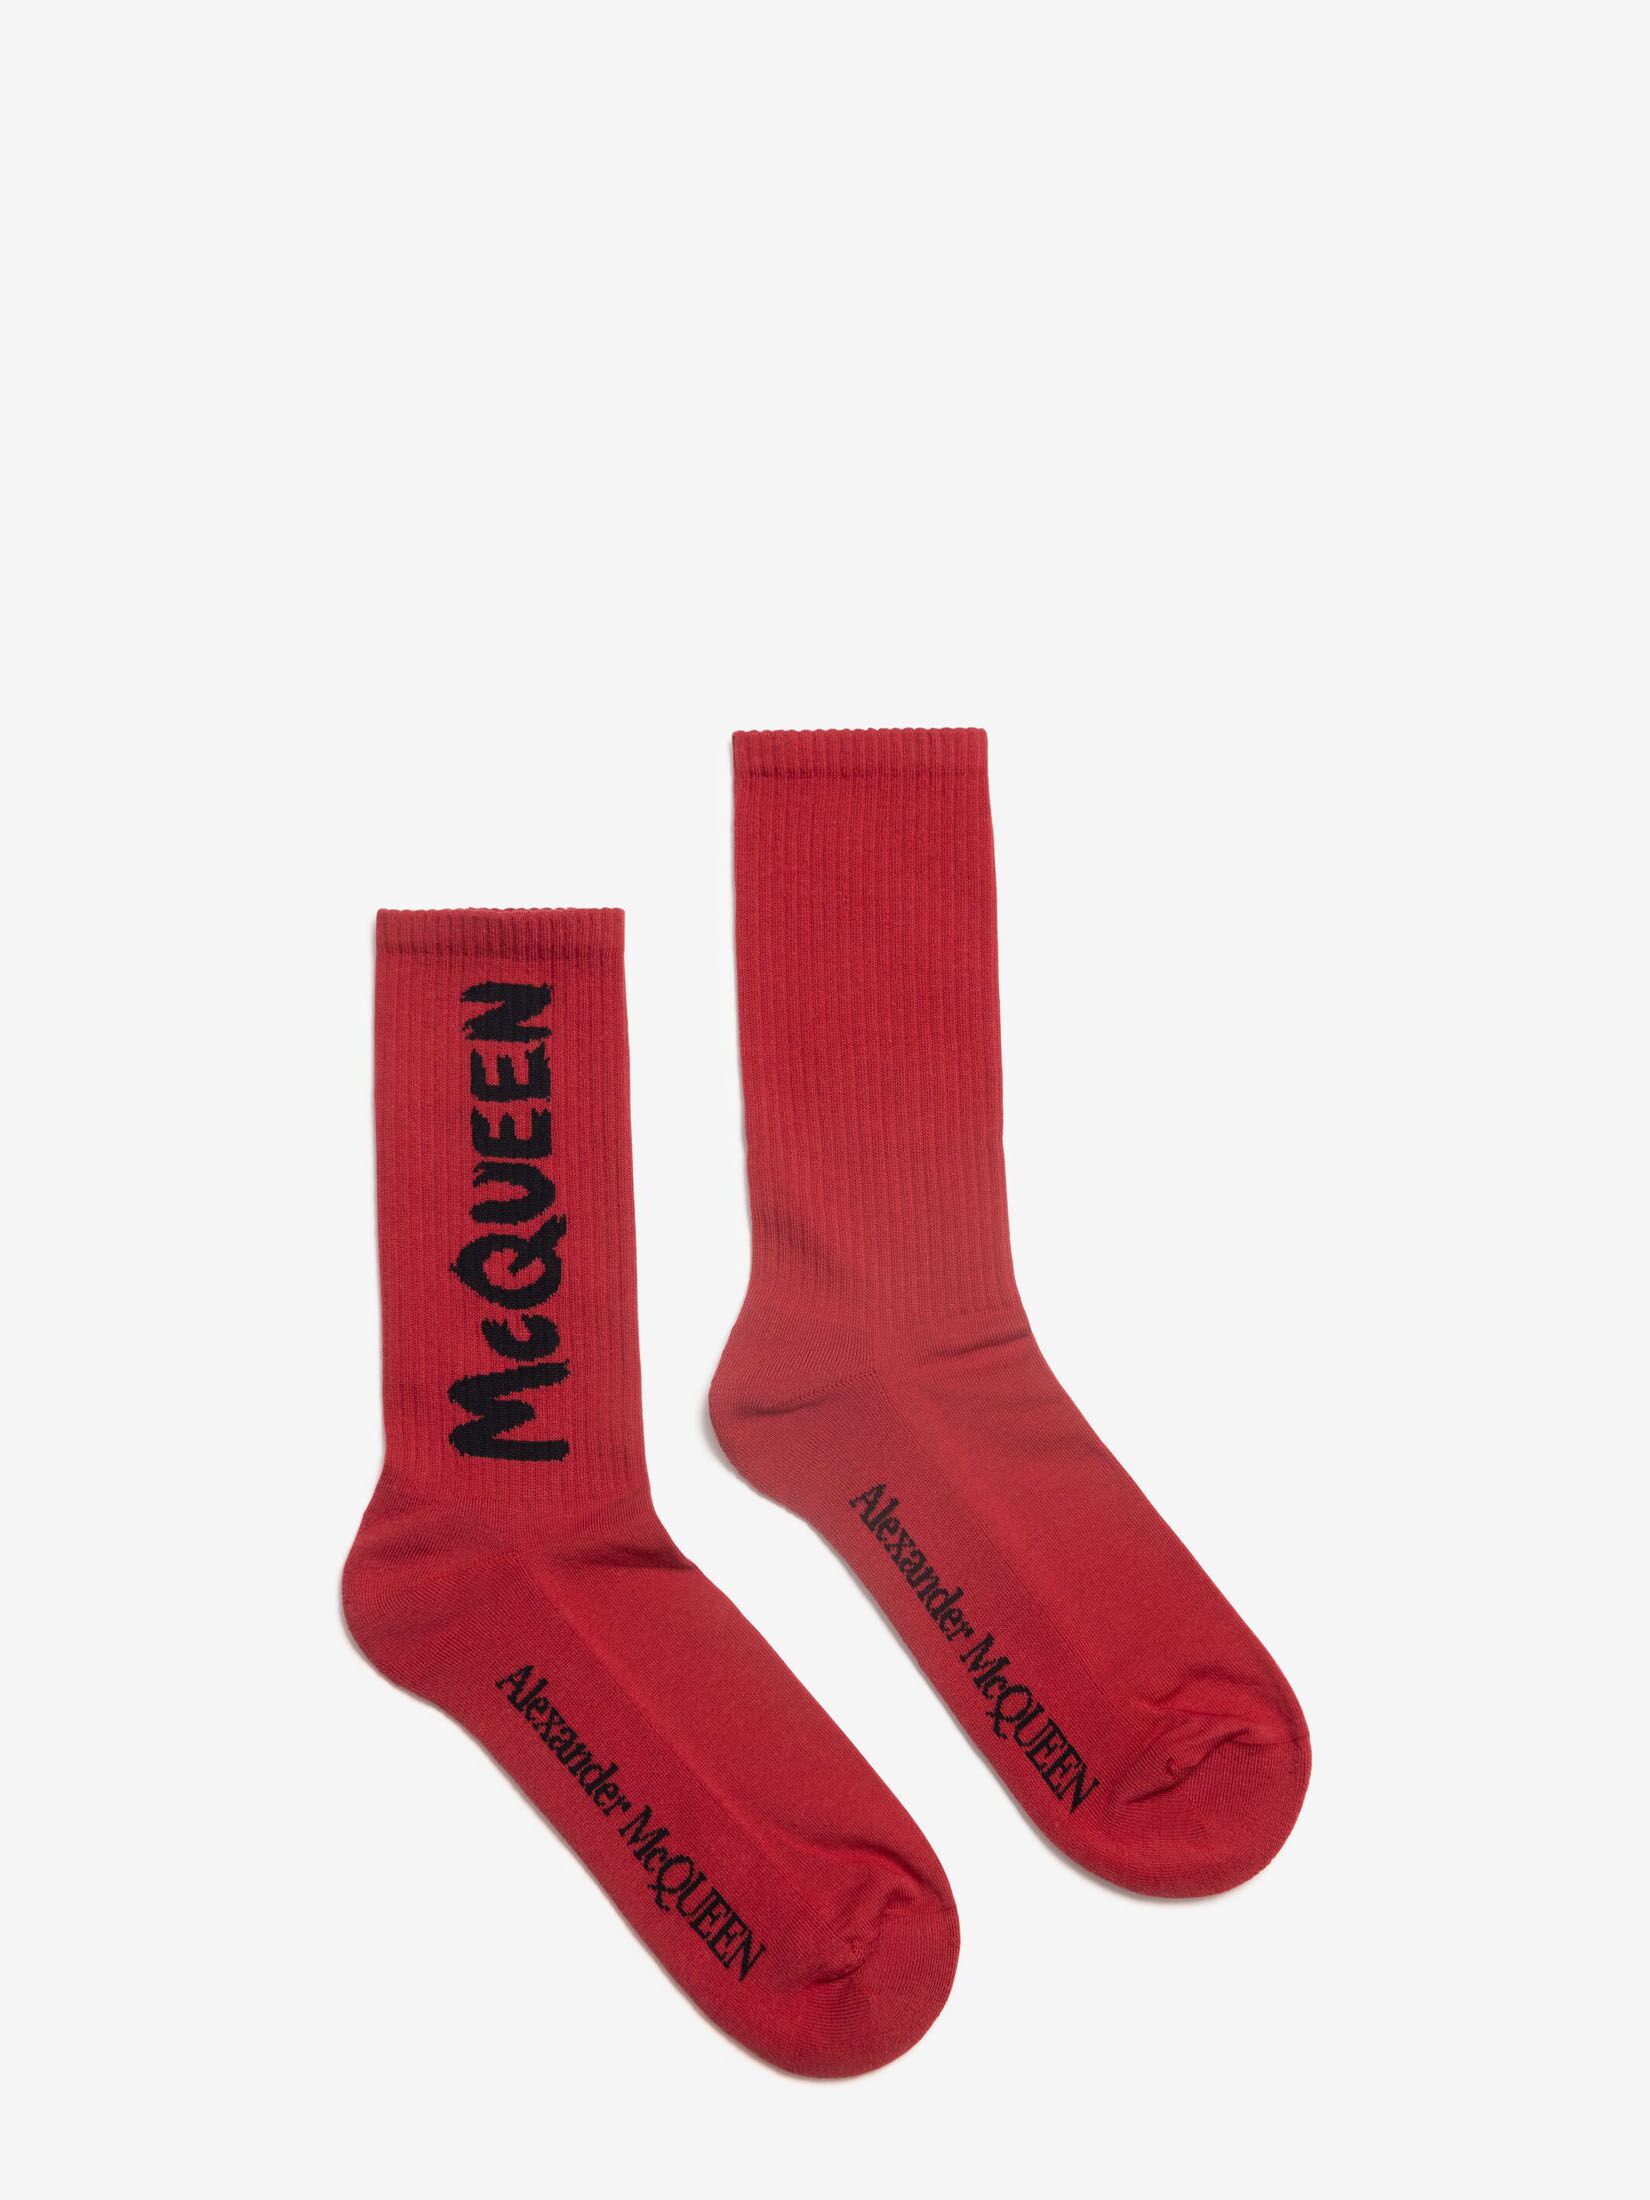 McQueen Graffiti Socken